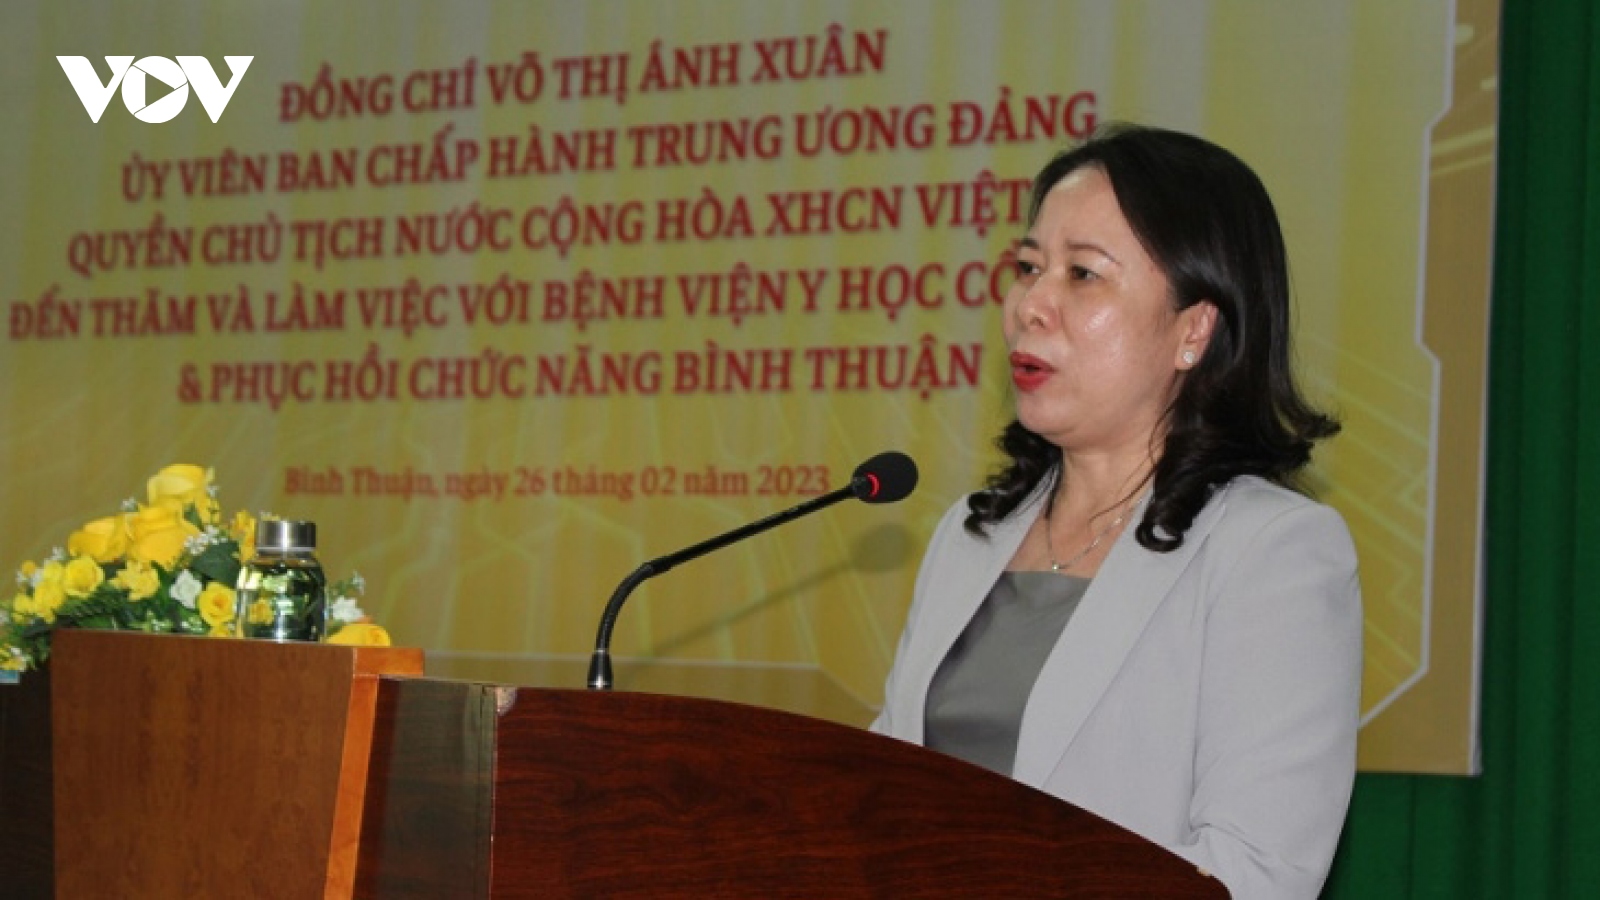 Quyền Chủ tịch nước thăm và chúc mừng thầy thuốc ở Bình Thuận